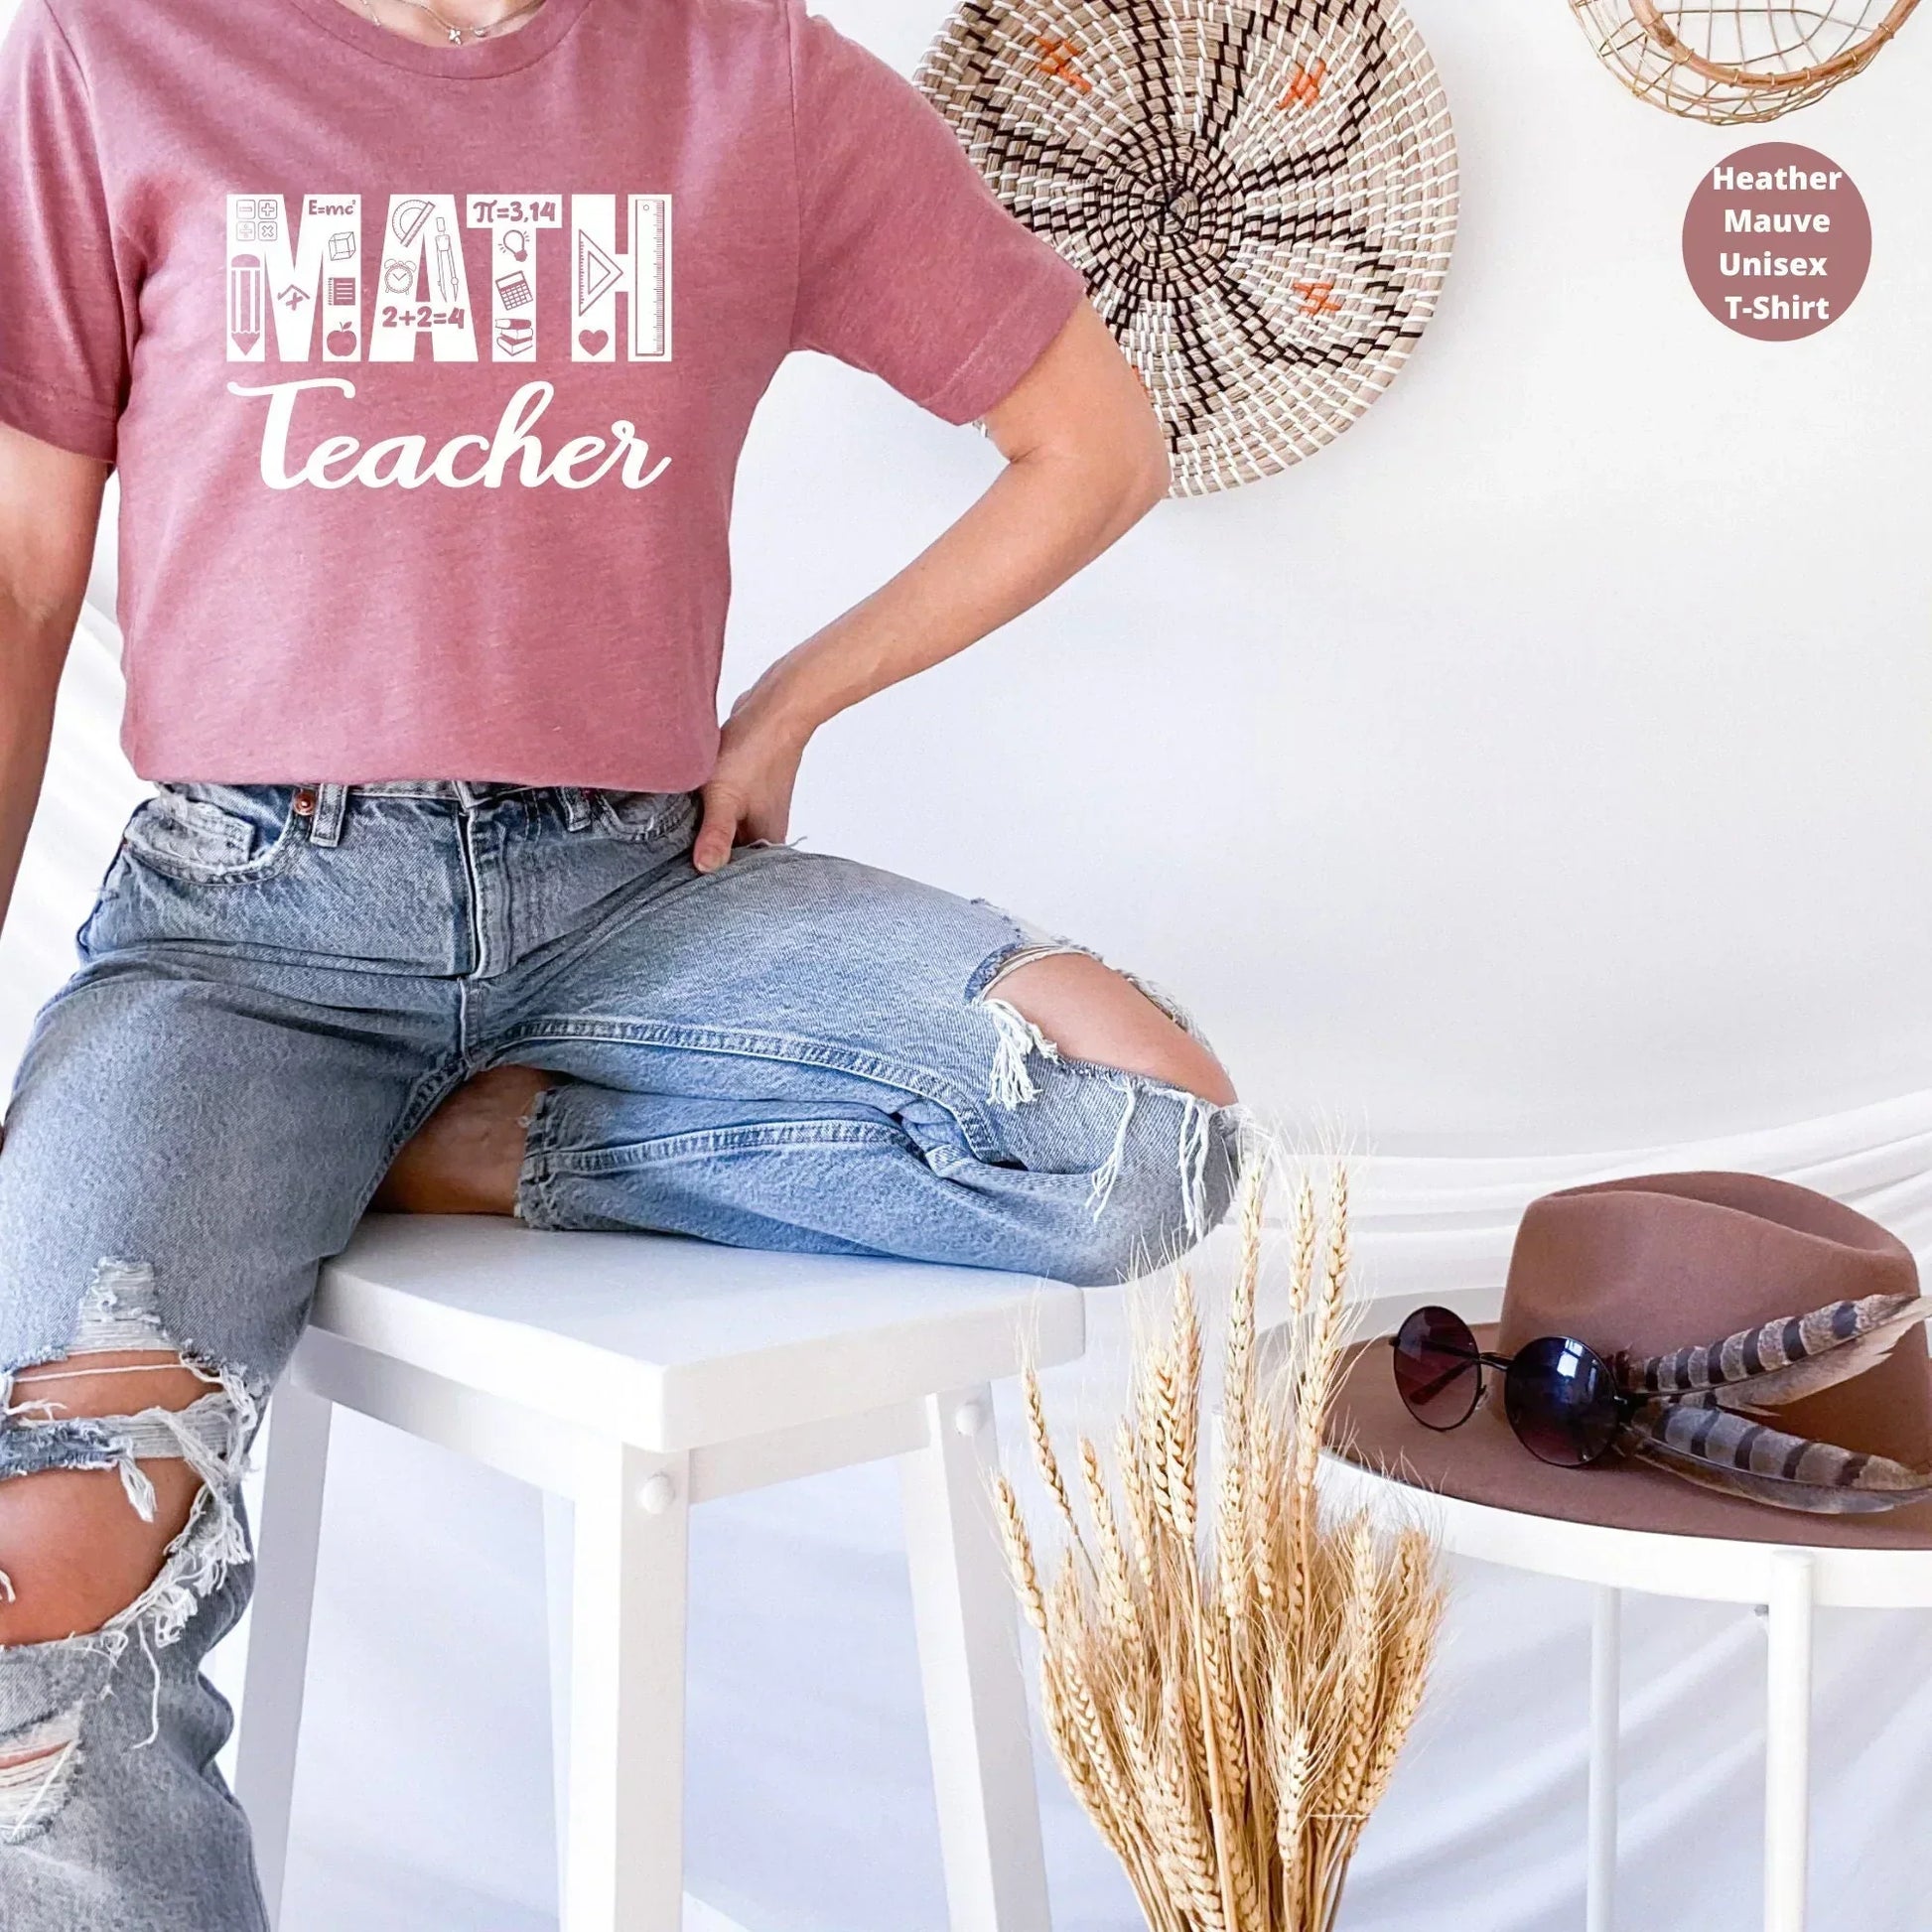 Math Teacher Shirt